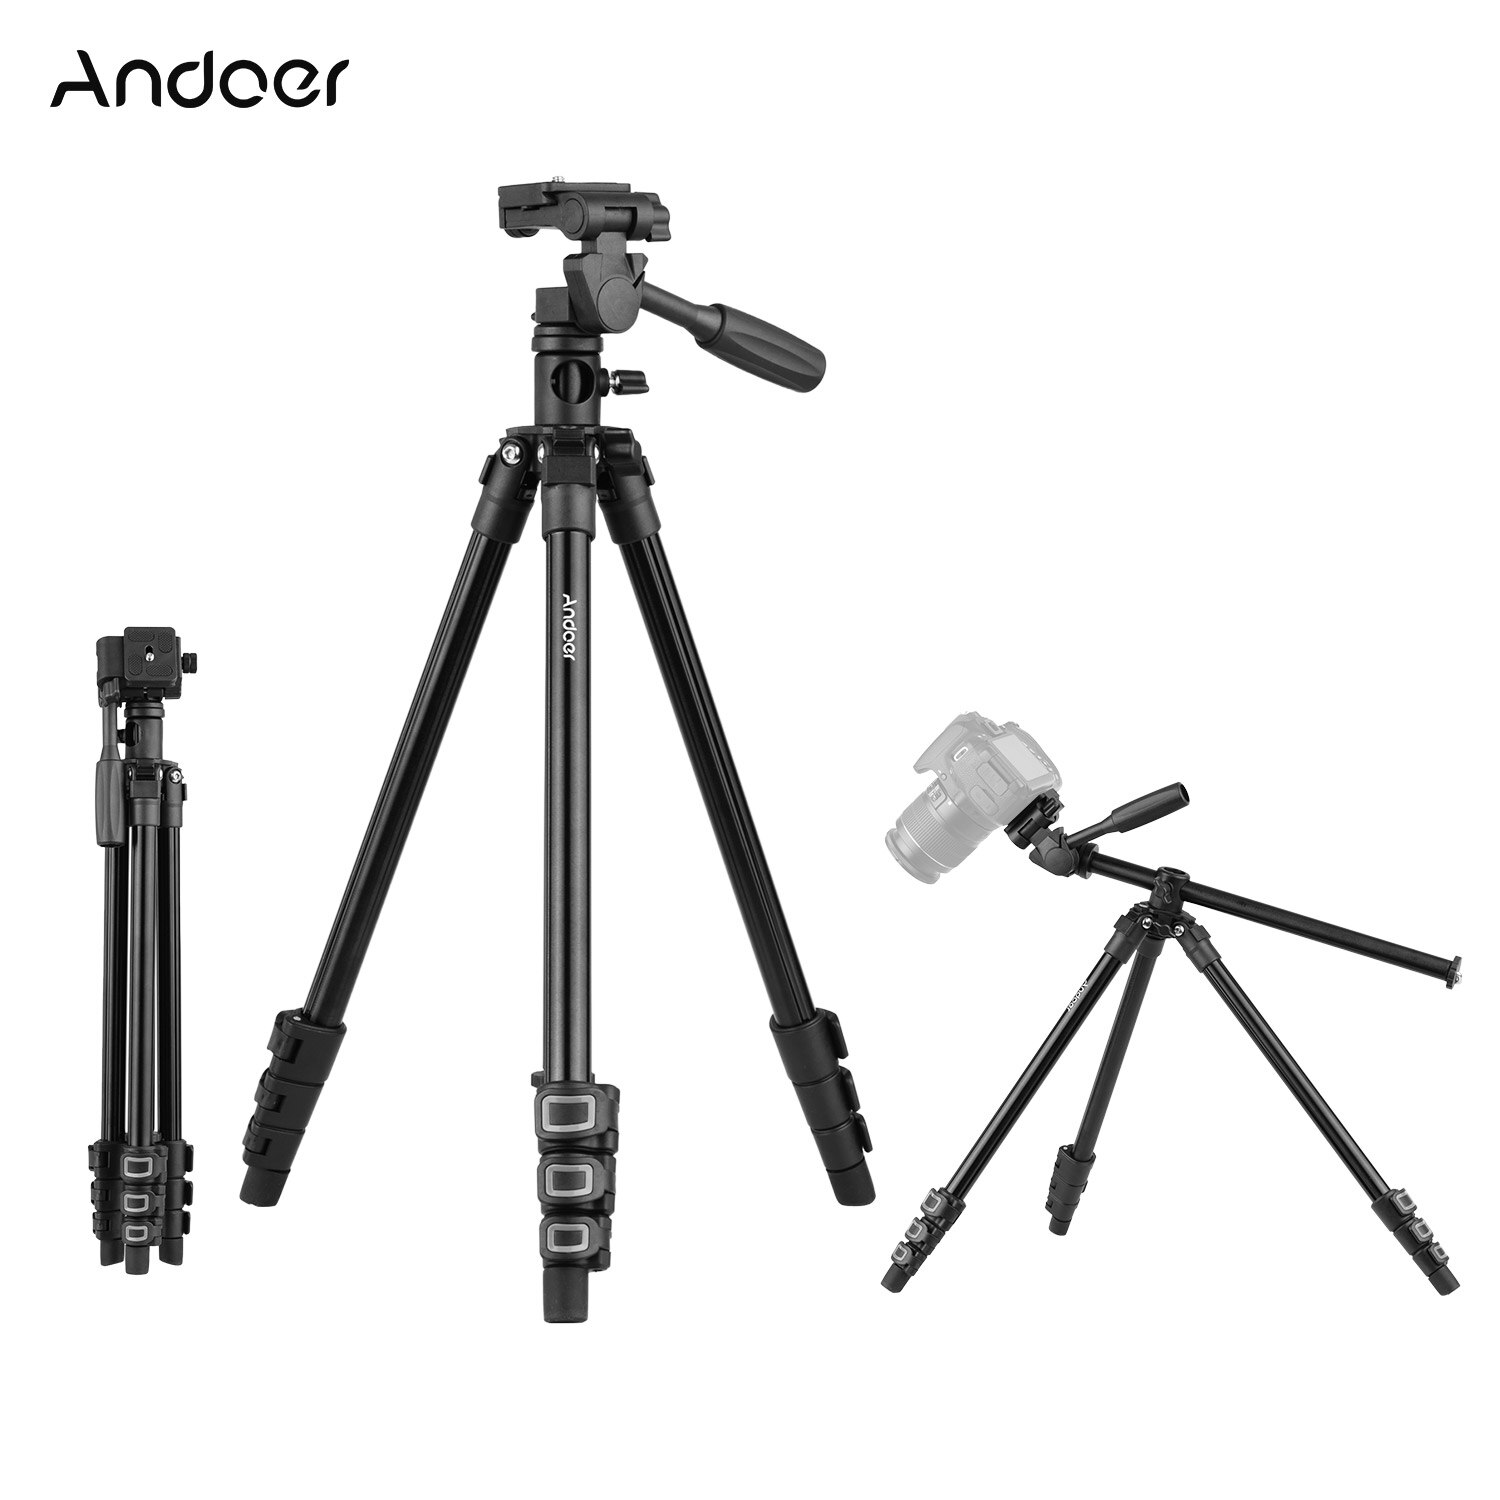 Andoer Video Statief Horizontale Mount Zware Camera Met 3-Weg Pan & Tilt Head Voor Dslr Camera 'S Camcorders mini Projector